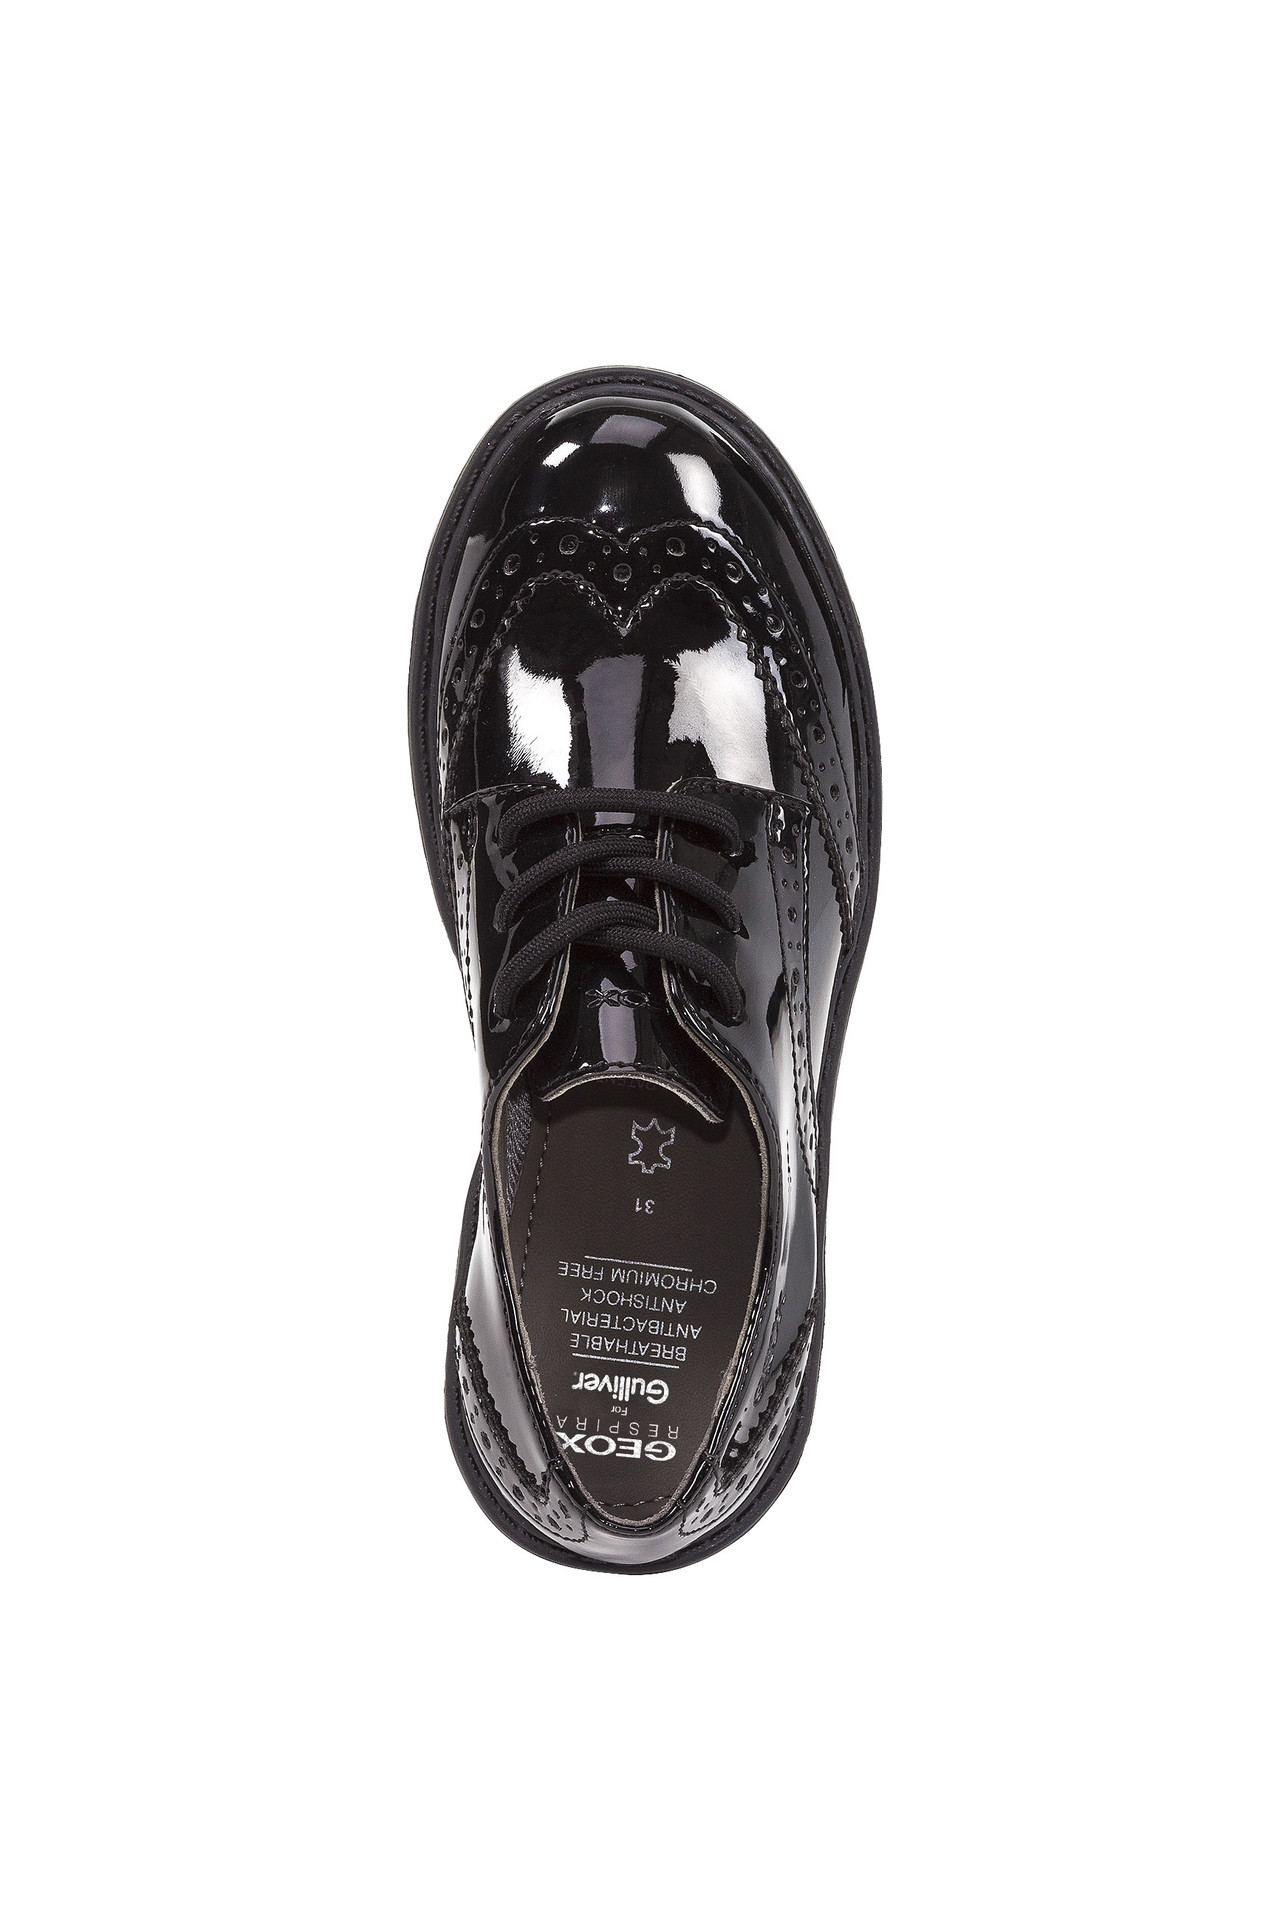 Туфли дерби Geox с лакированными вставками J6420NL00HHC9999, размер 37, цвет черный - фото 5